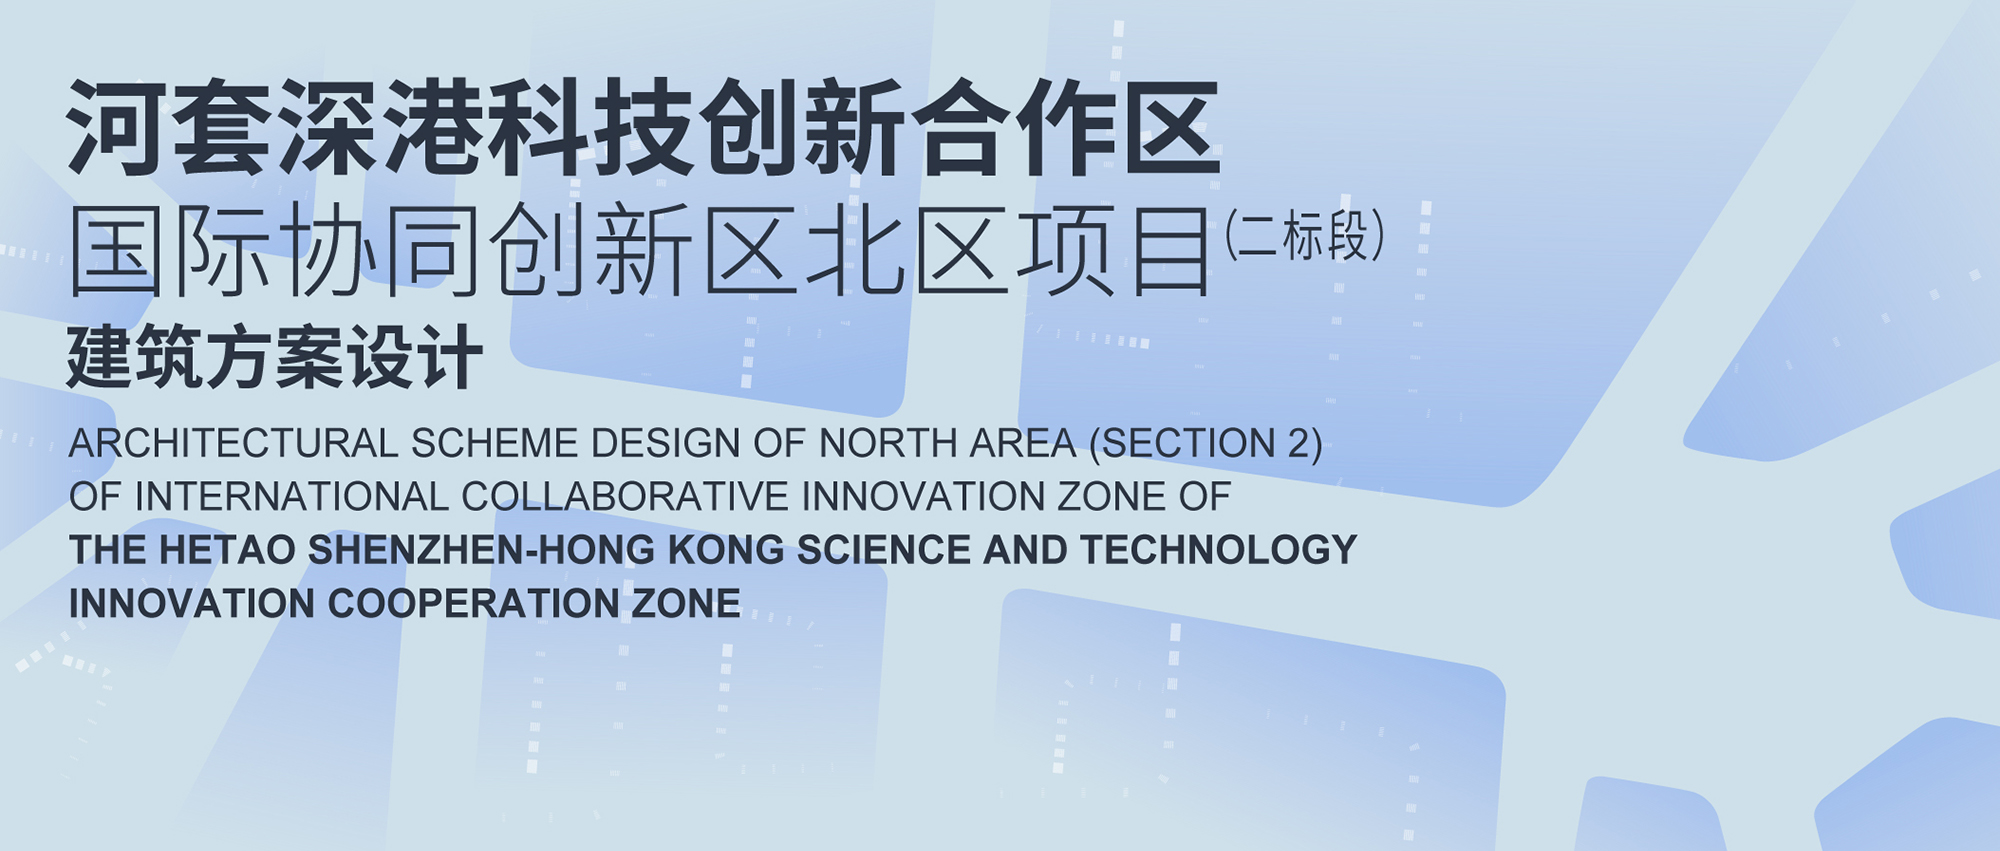 招标公告 | 河套深港科技创新合作区国际协同创新区北区项目（二标段）建筑方案设计-CNYISAI艺赛